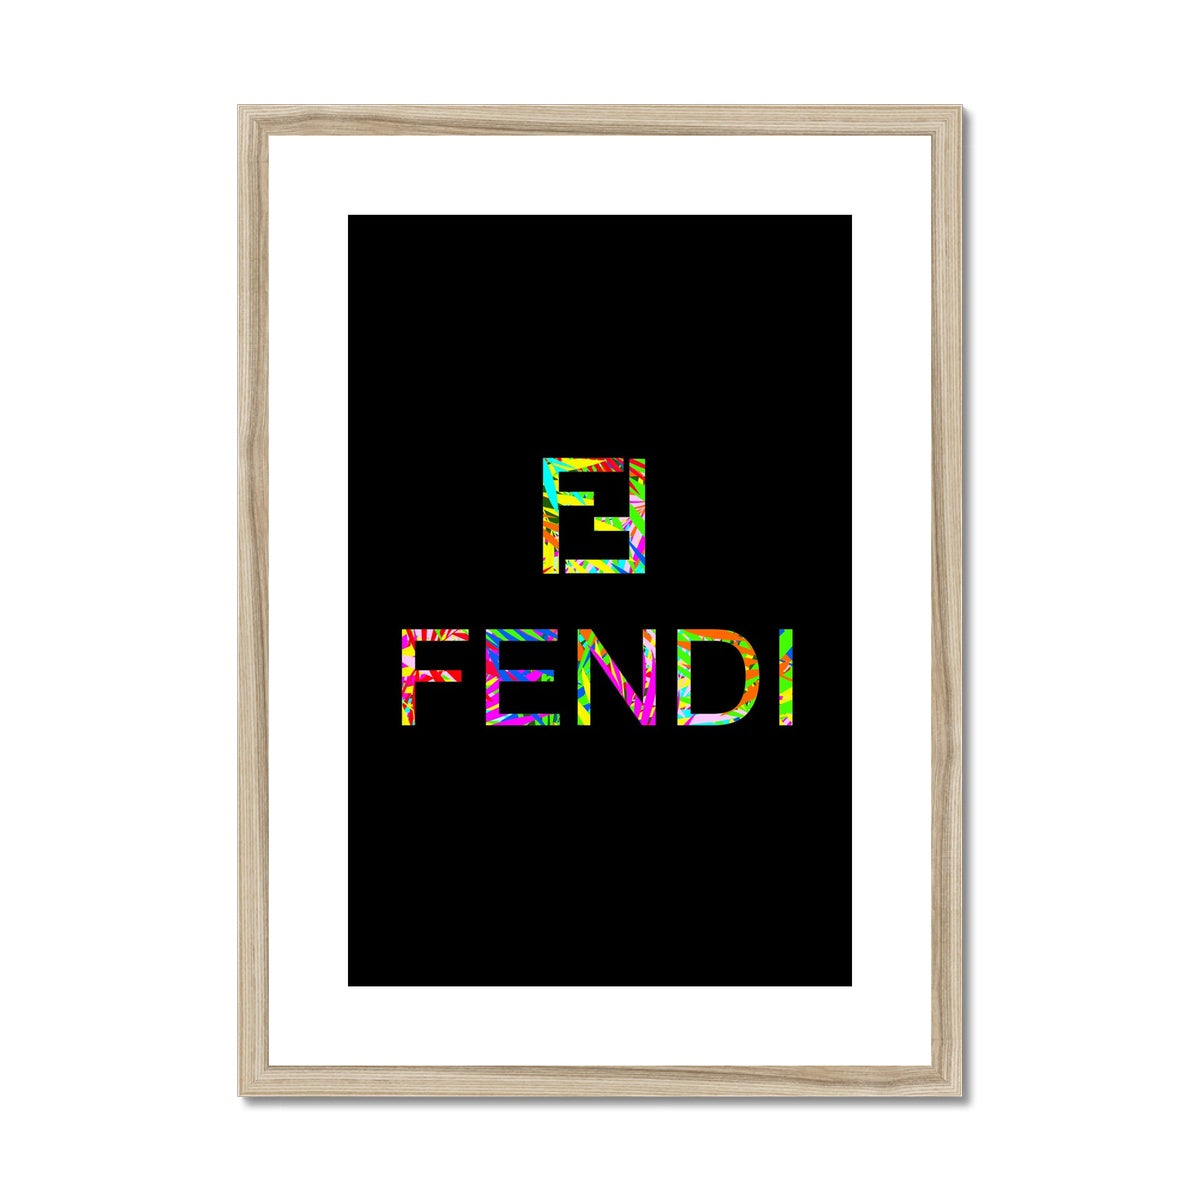 Fendi - Framed Print